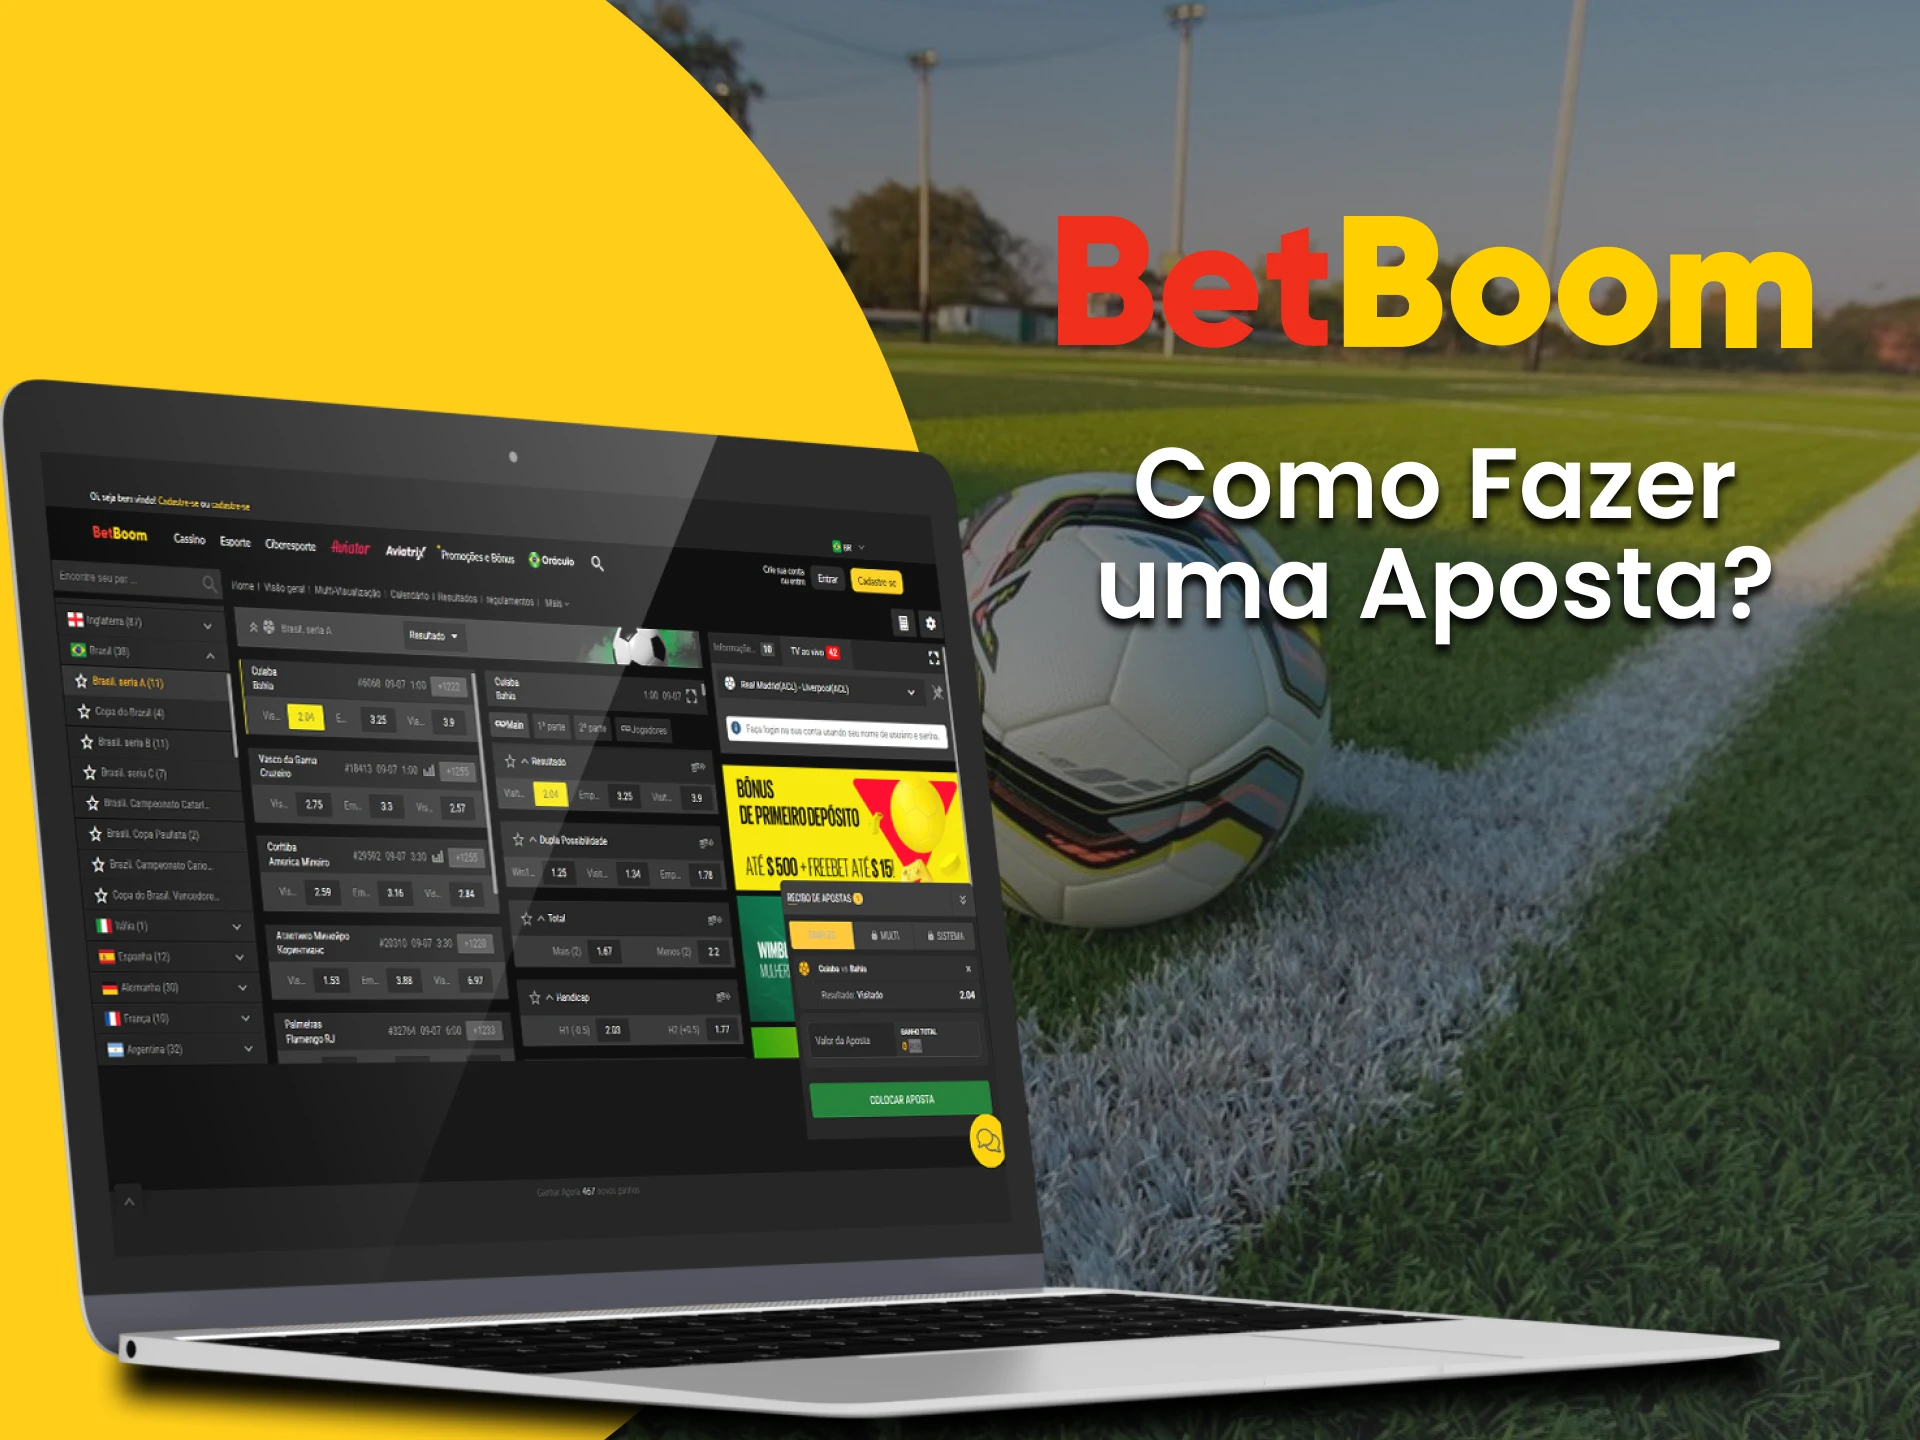 Siga todos os passos e aposte em esportes com a casa de apostas BetBoom online.